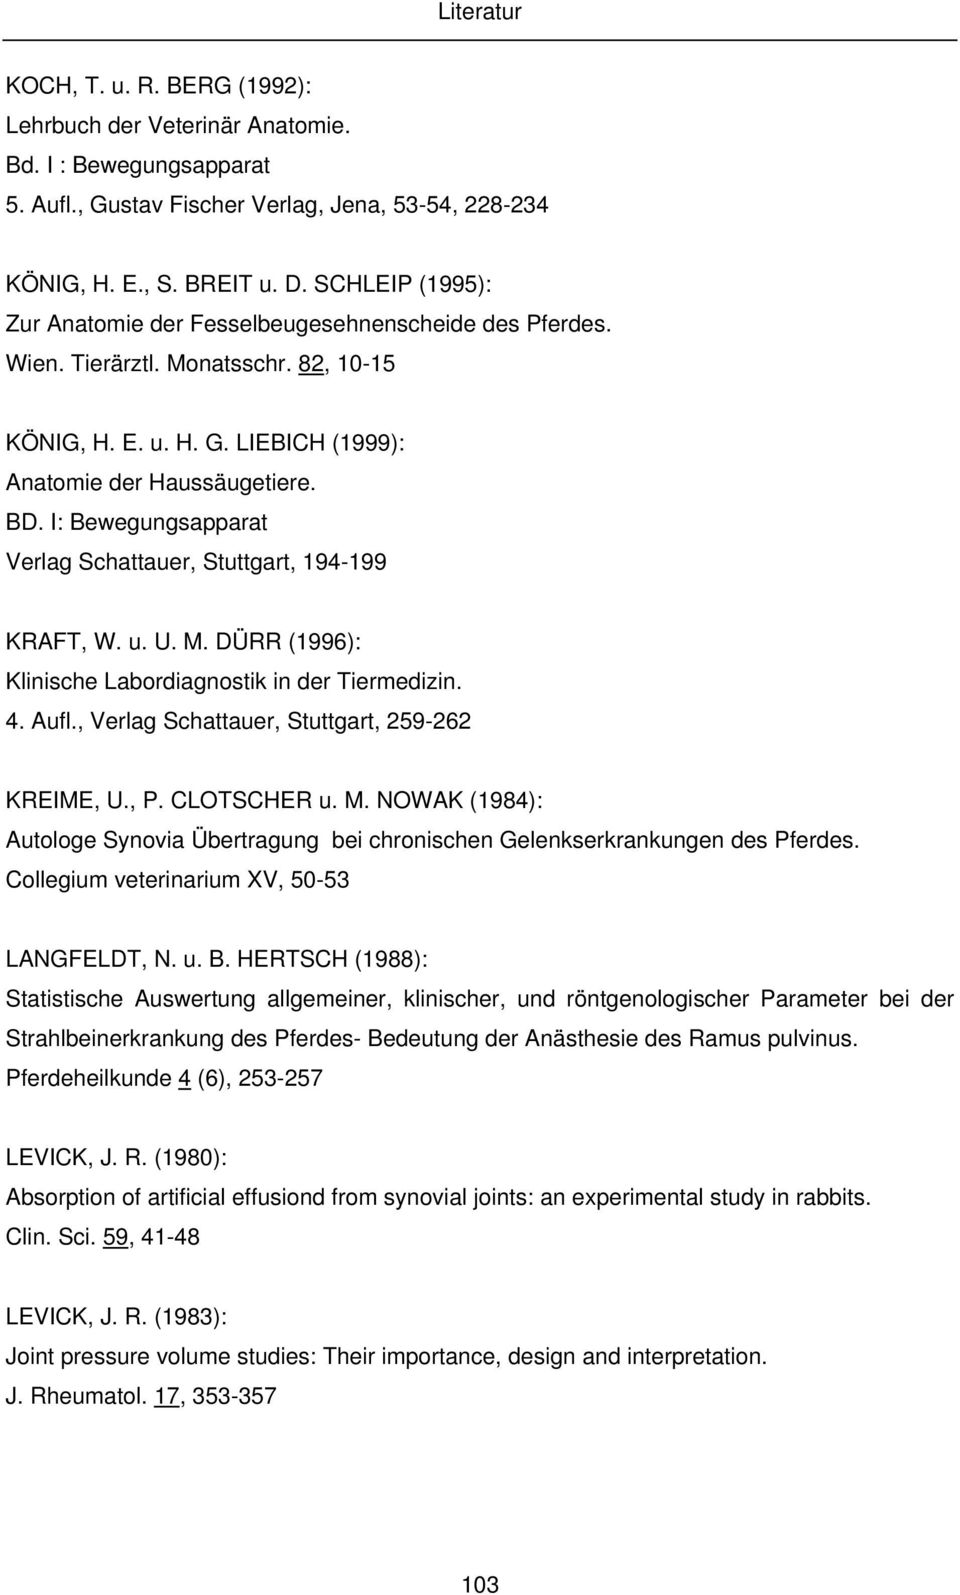 I: Bewegungsapparat Verlag Schattauer, Stuttgart, 194-199 KRAFT, W. u. U. M. DÜRR (1996): Klinische Labordiagnostik in der Tiermedizin. 4. Aufl., Verlag Schattauer, Stuttgart, 259-262 KREIME, U., P.